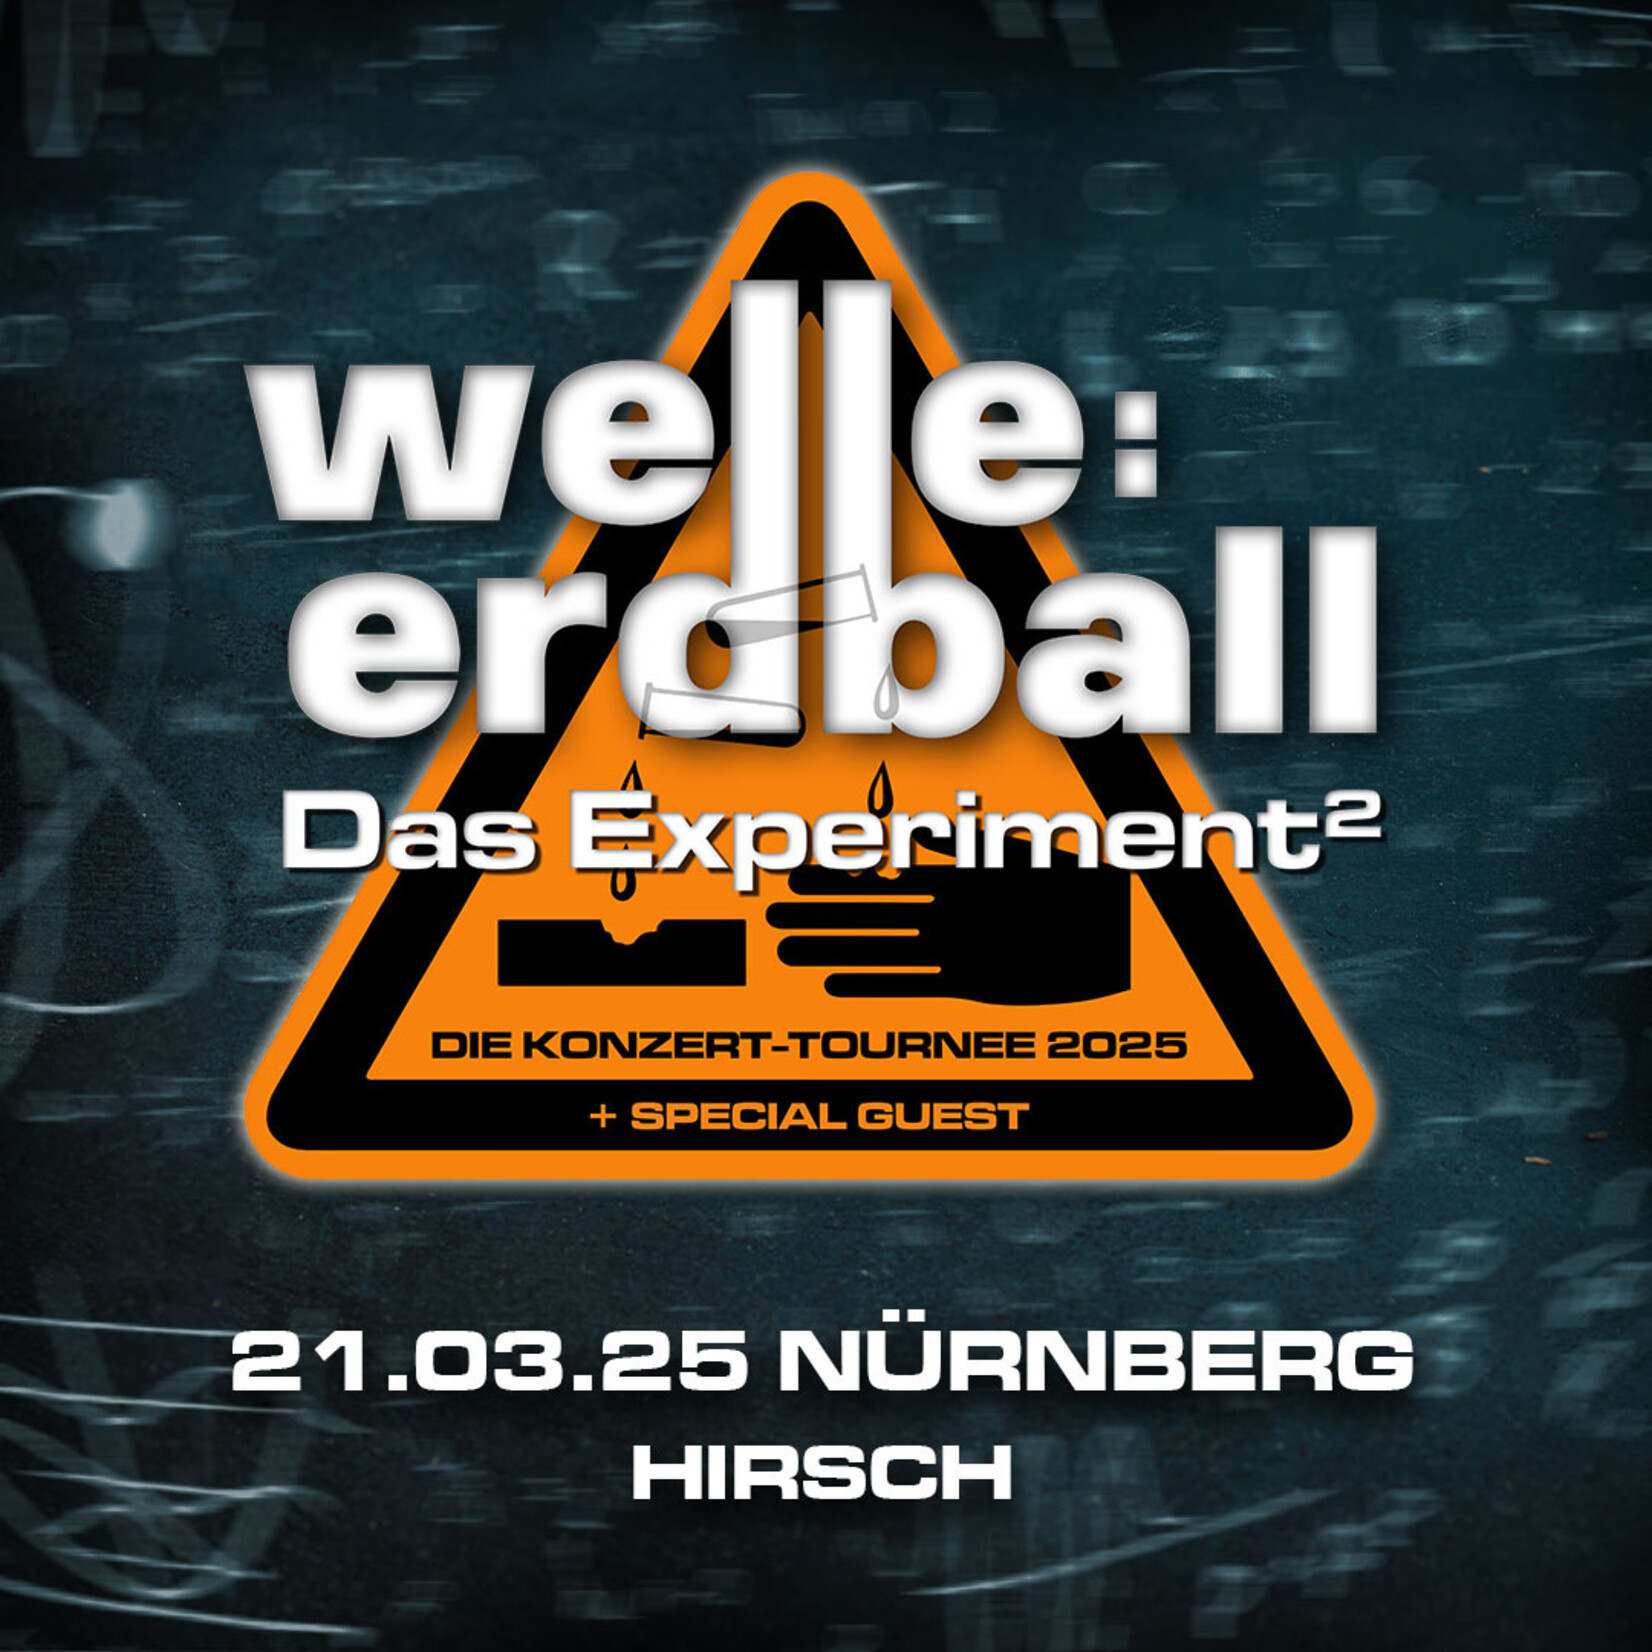 21.03.2025 - NÜRNBERG - WELLE:ERDBALL - DAS EXPERIMENT²